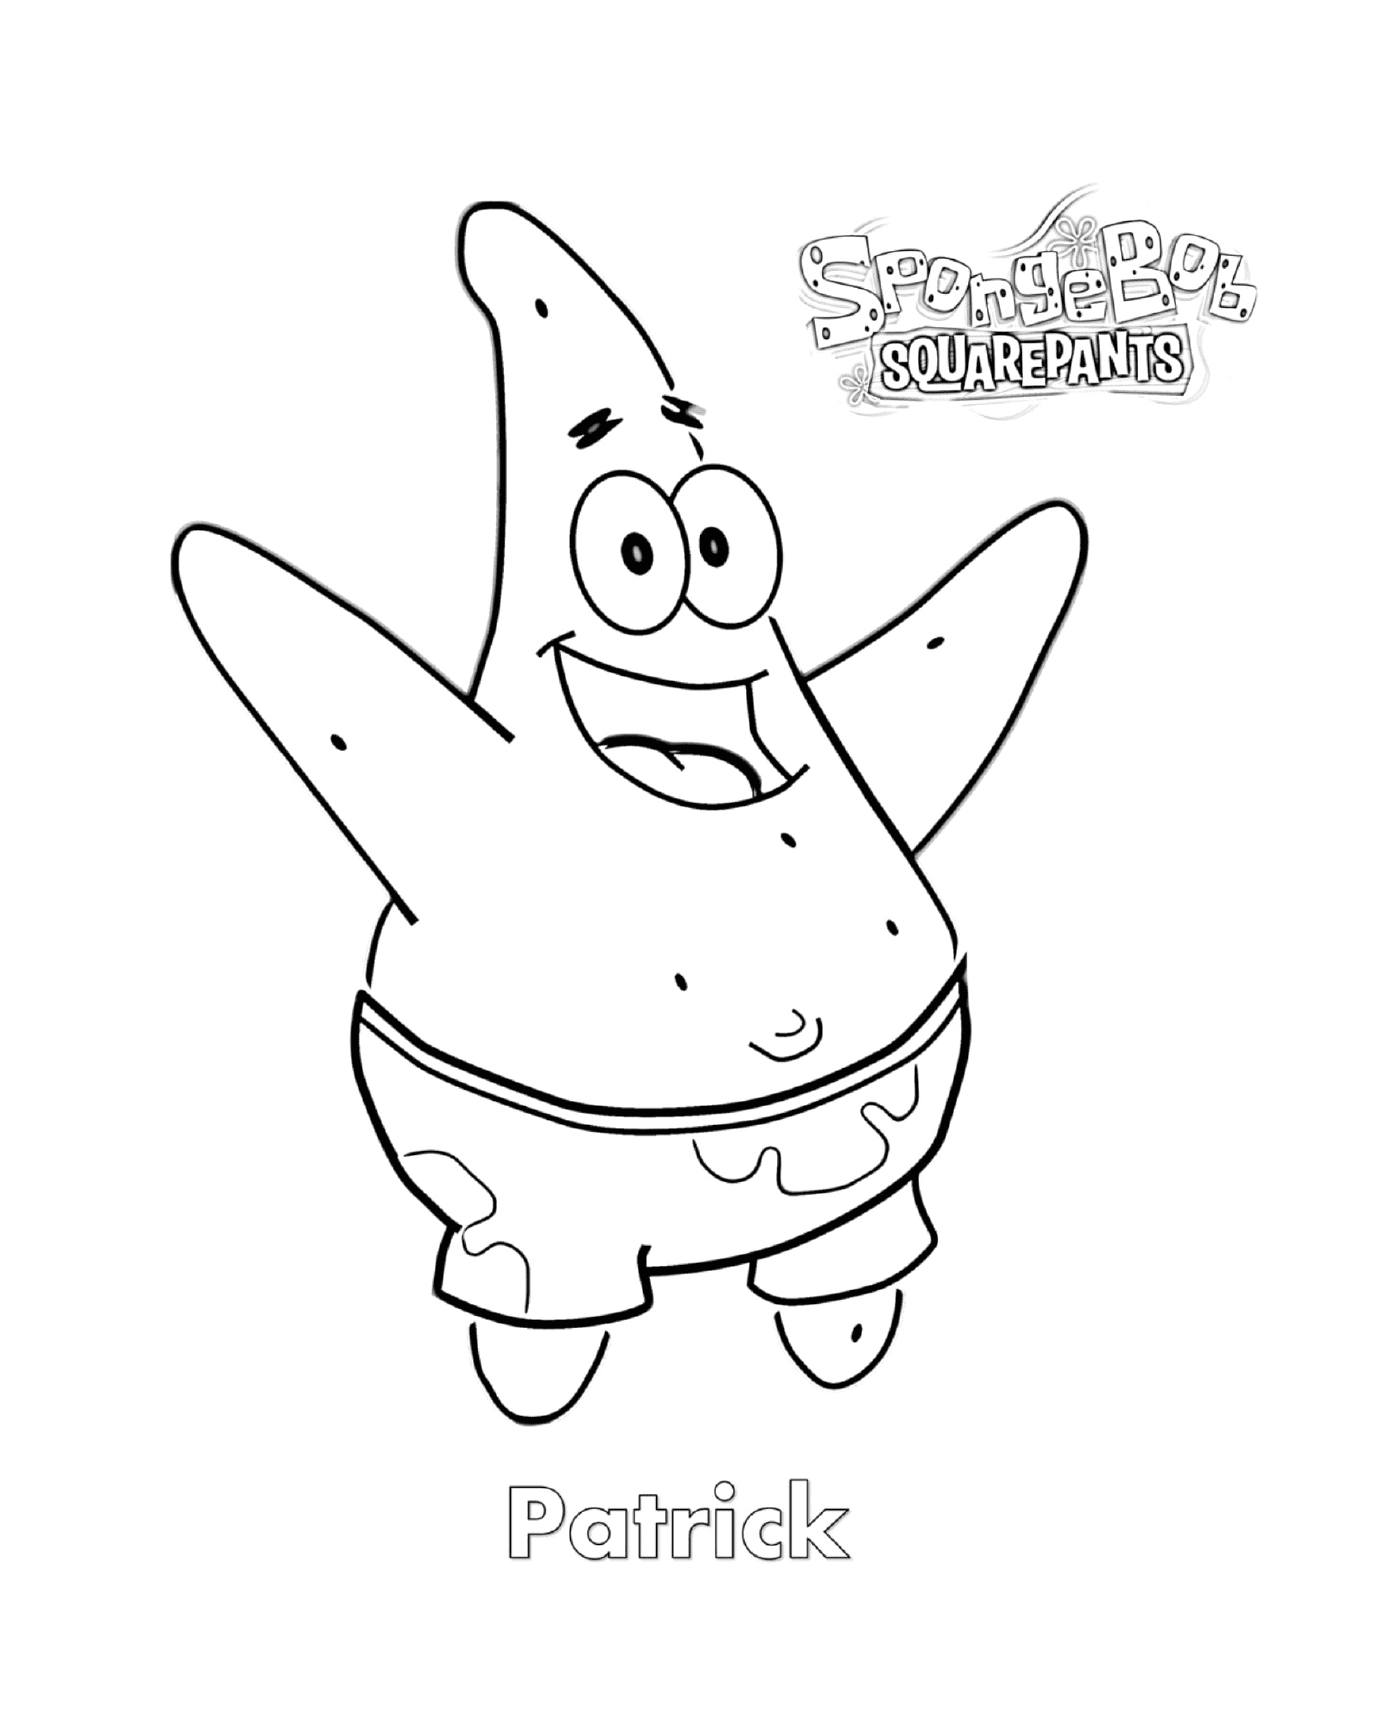  Patrick in guter Form, ein Charakter von SpongeBob 